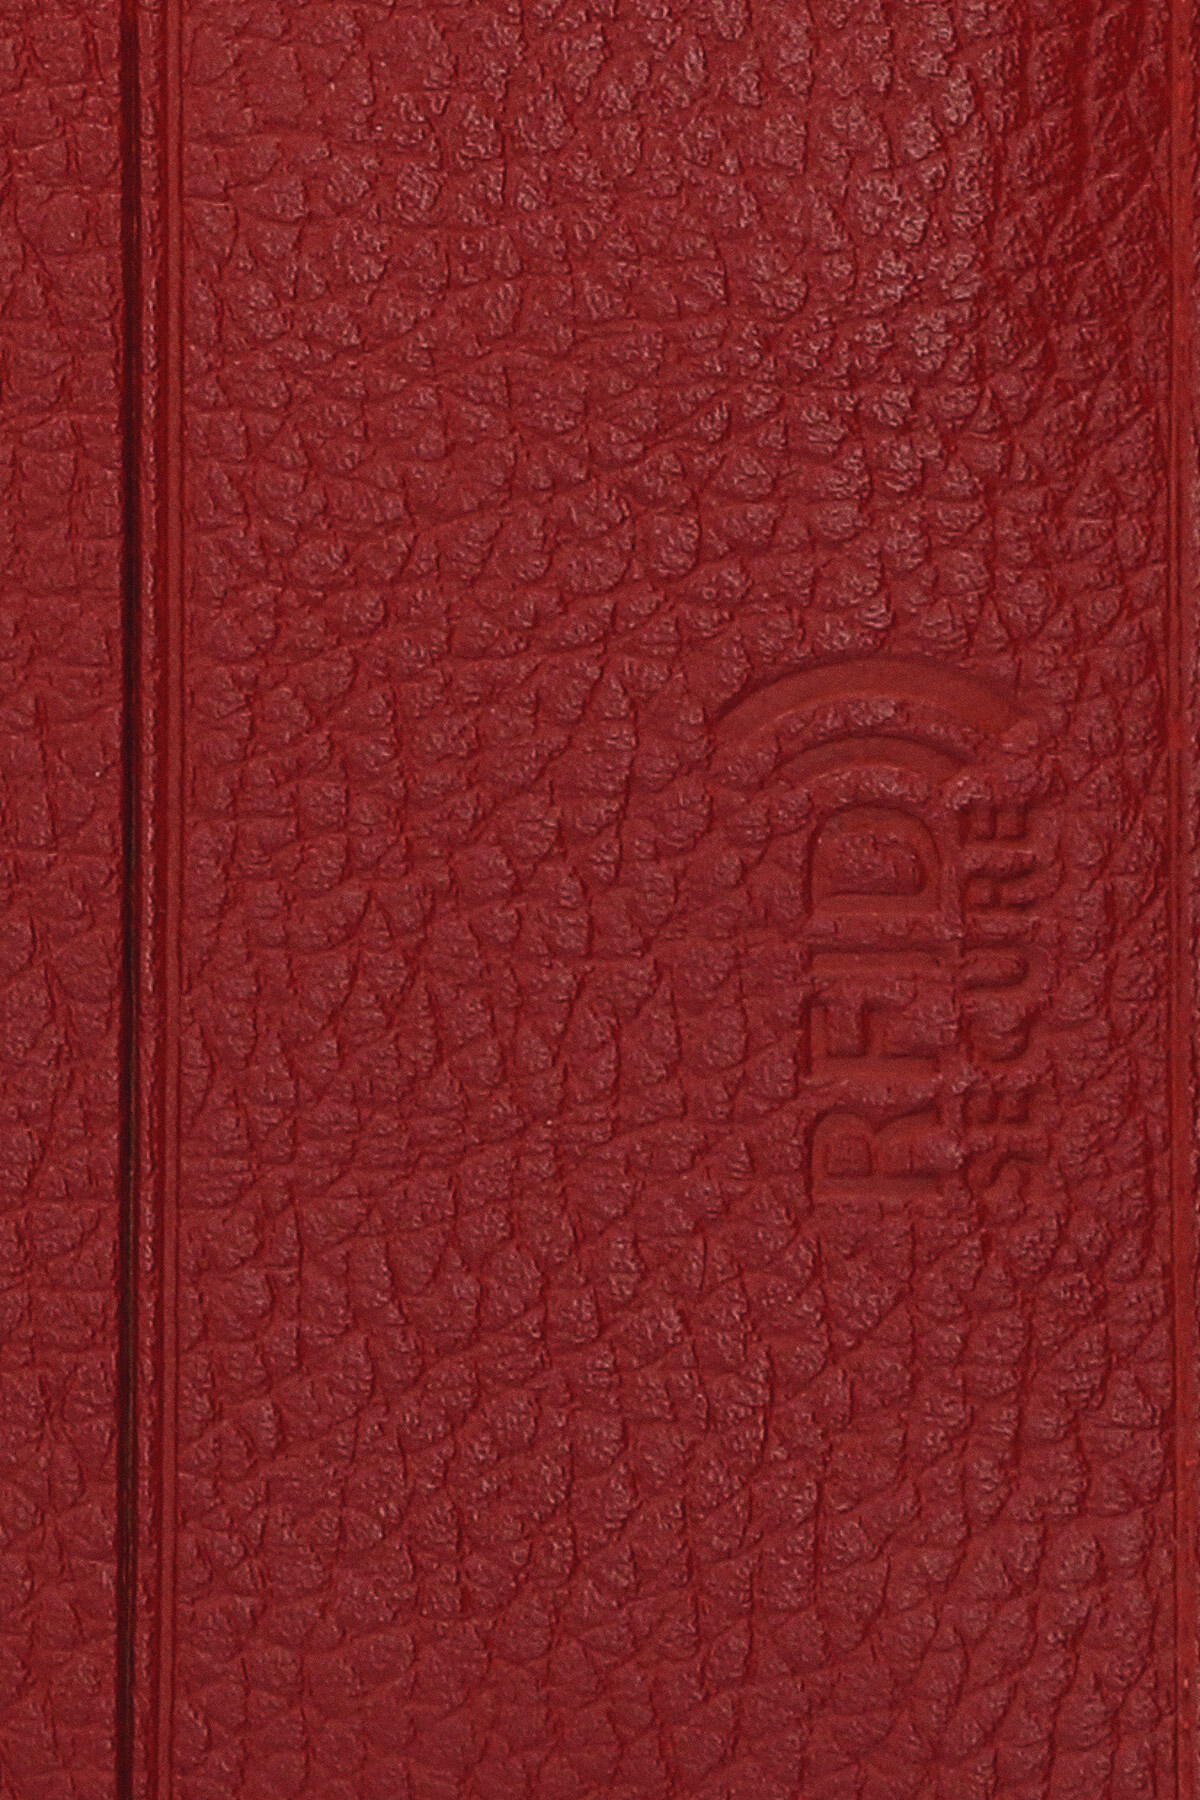 Fame Paris Premium Red Leather Slender Wallet Red Black Wallet